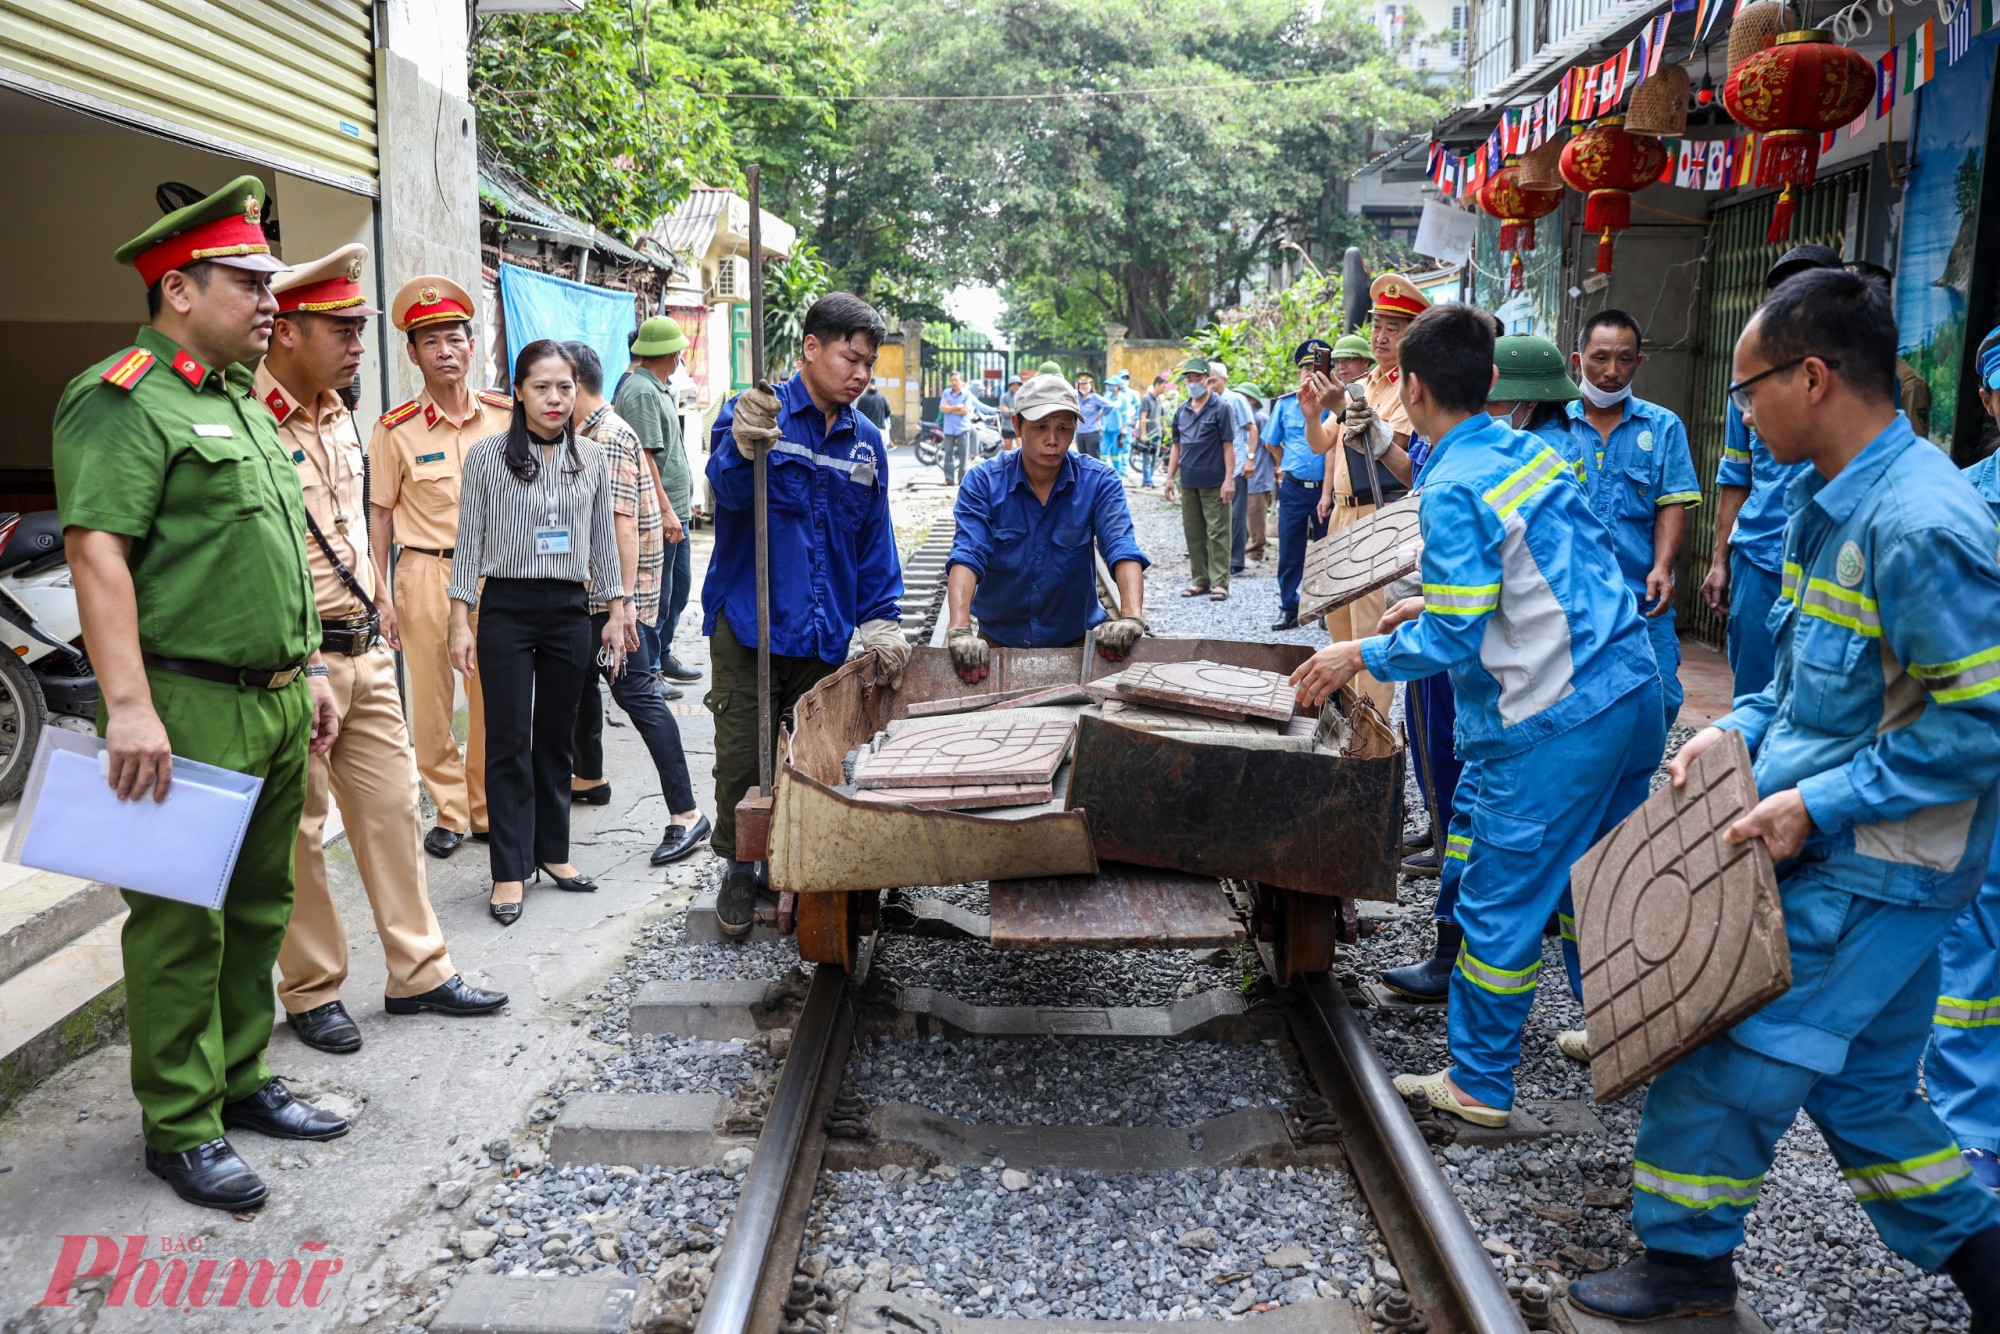 Tổ công tác liên ngành dọn dẹp khu vực đường sắt, đoạn từ gác chắn đường tàu trên phố Khâm Thiên và kết thúc tại đầu ngõ 222 đường Lê Duẩn với chiều dài khoảng 400m.